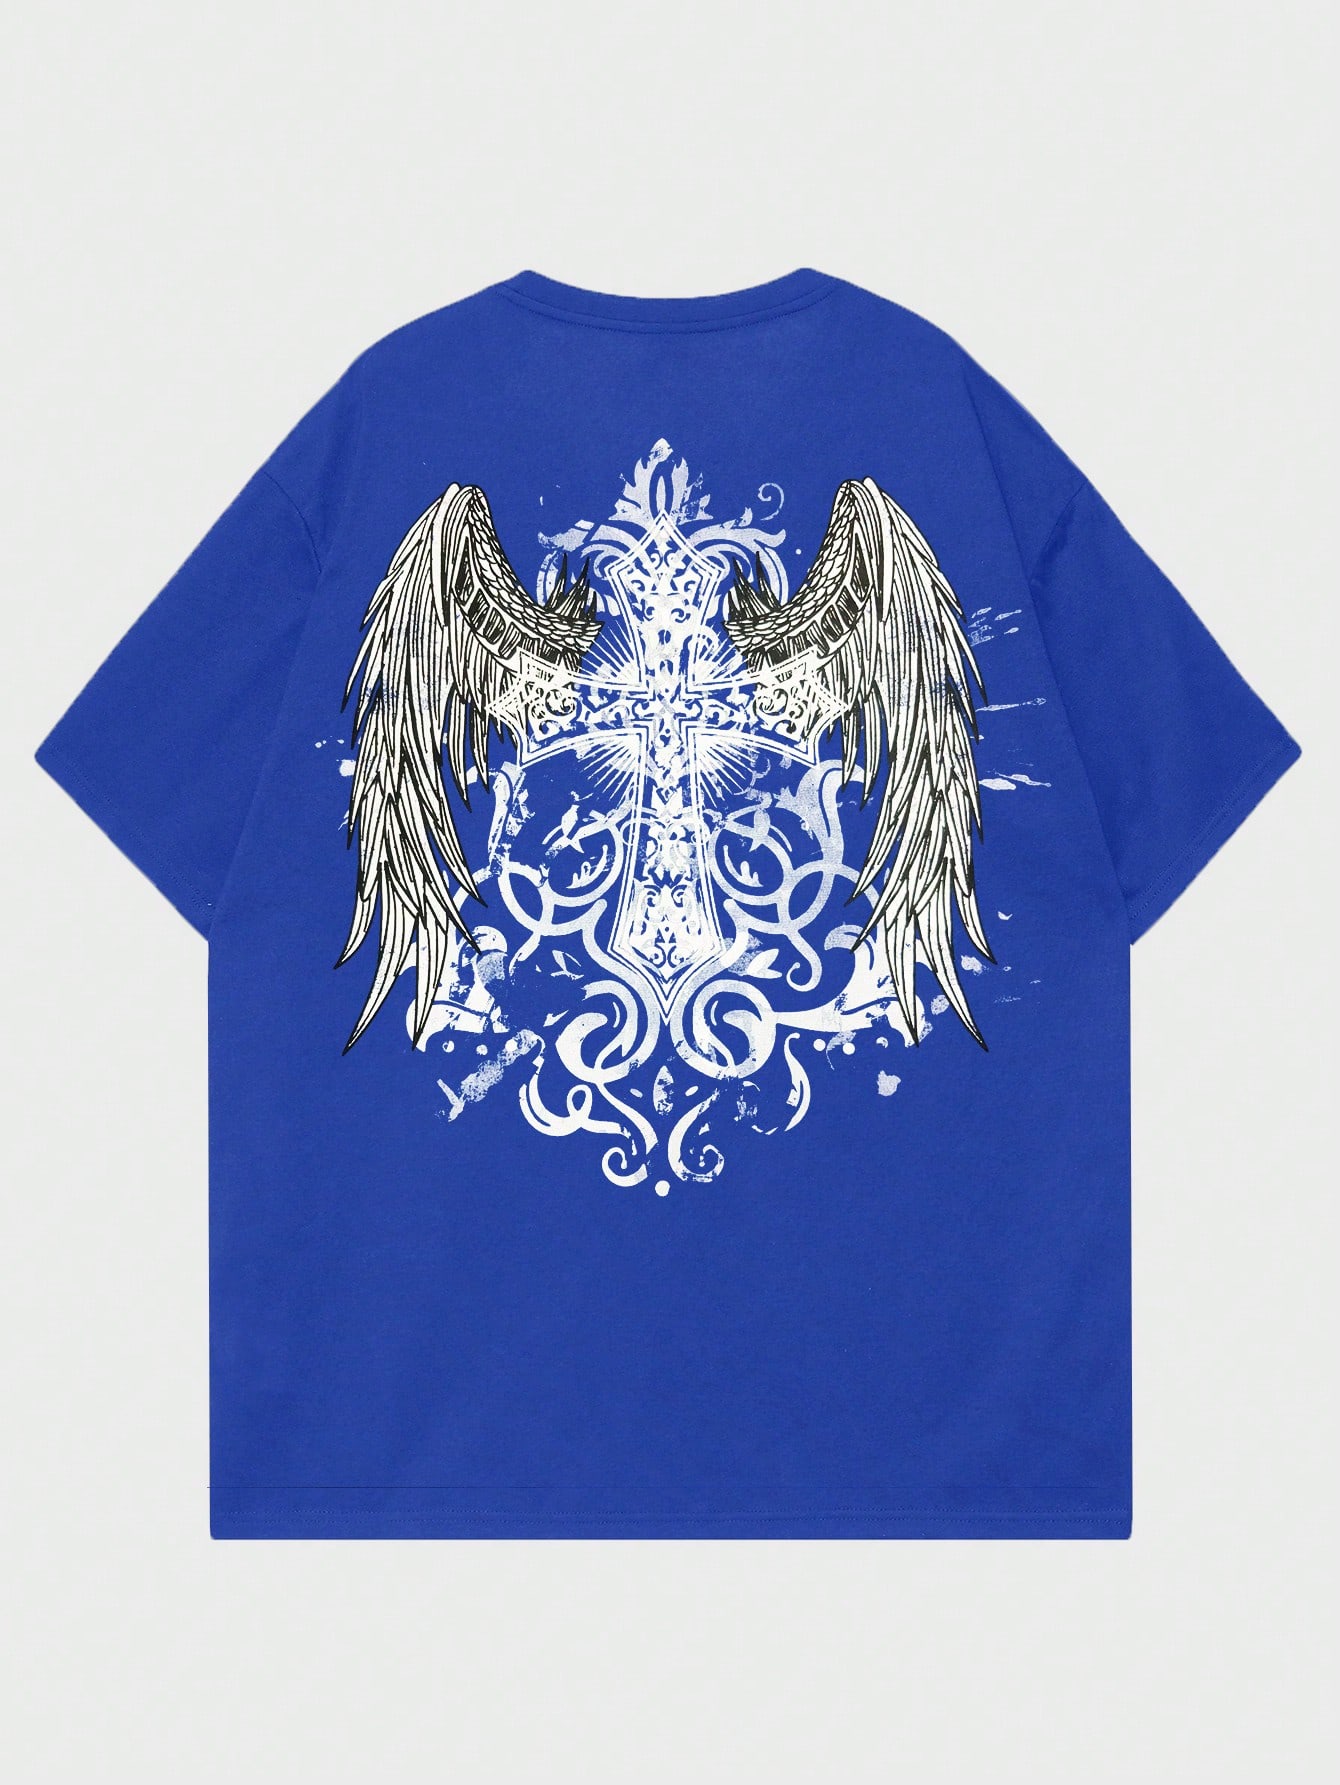 ROMWE Goth Мужская футболка с принтом снежинки и крестом для повседневной жизни, синий large 32x50cm spreading wings feathersblack